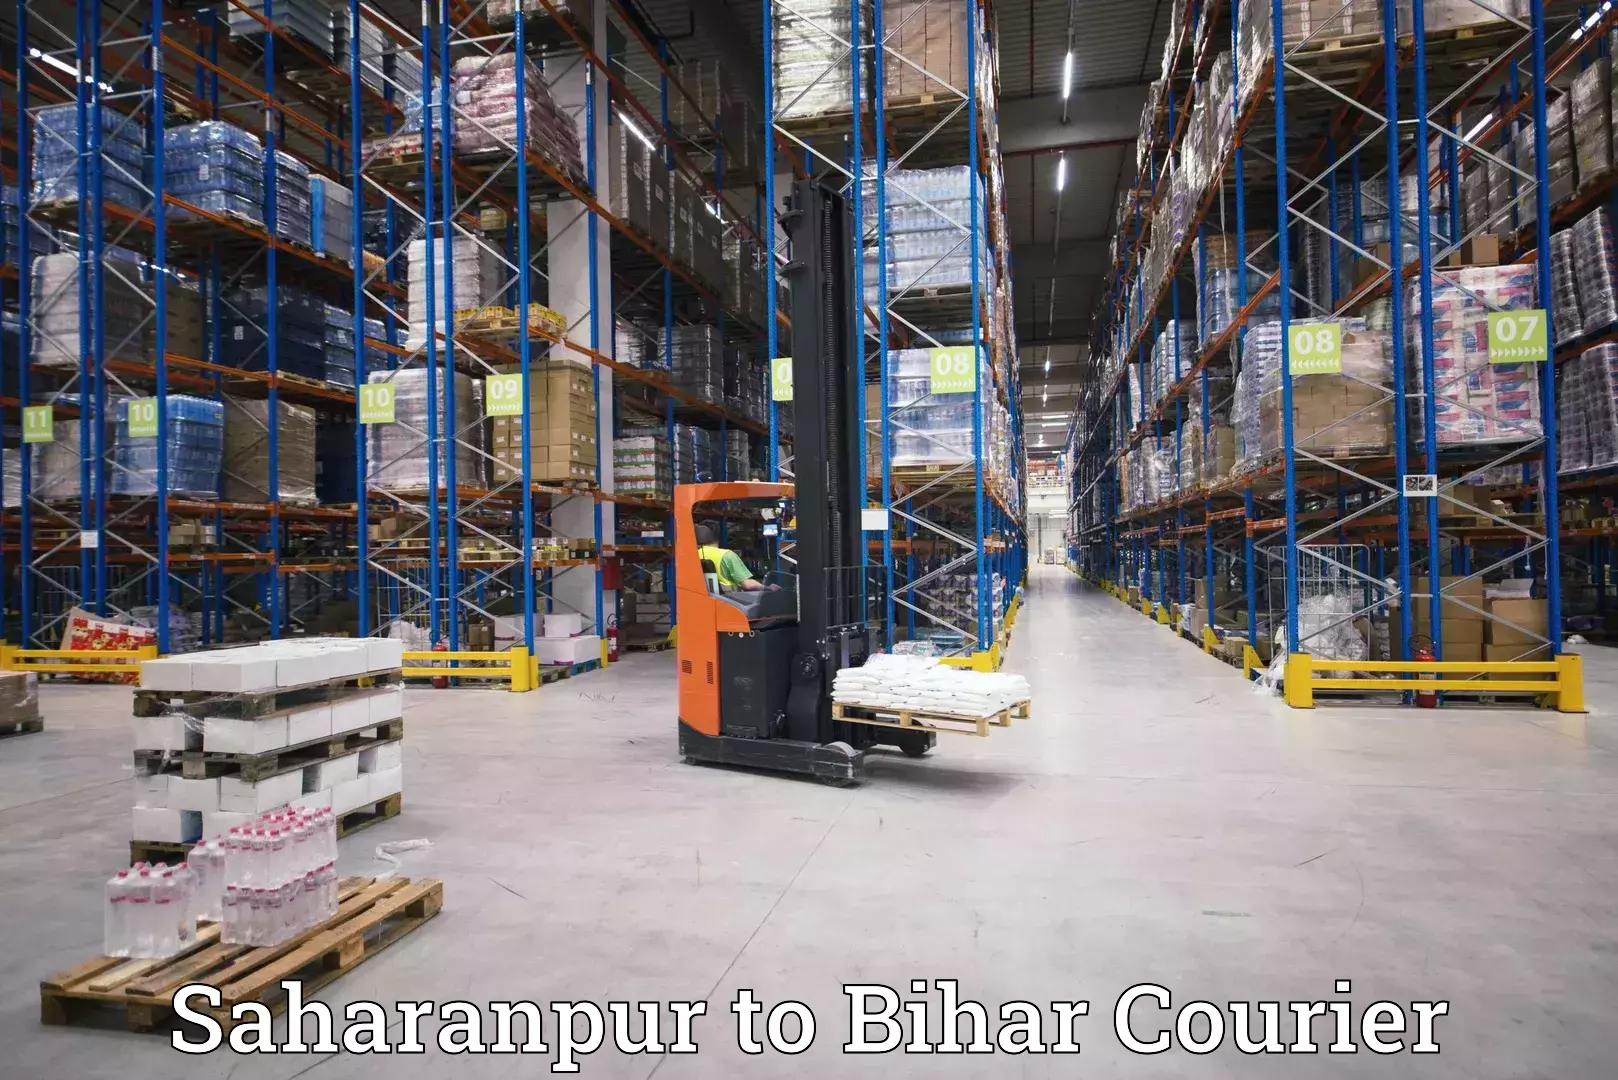 Express logistics service Saharanpur to Bihar